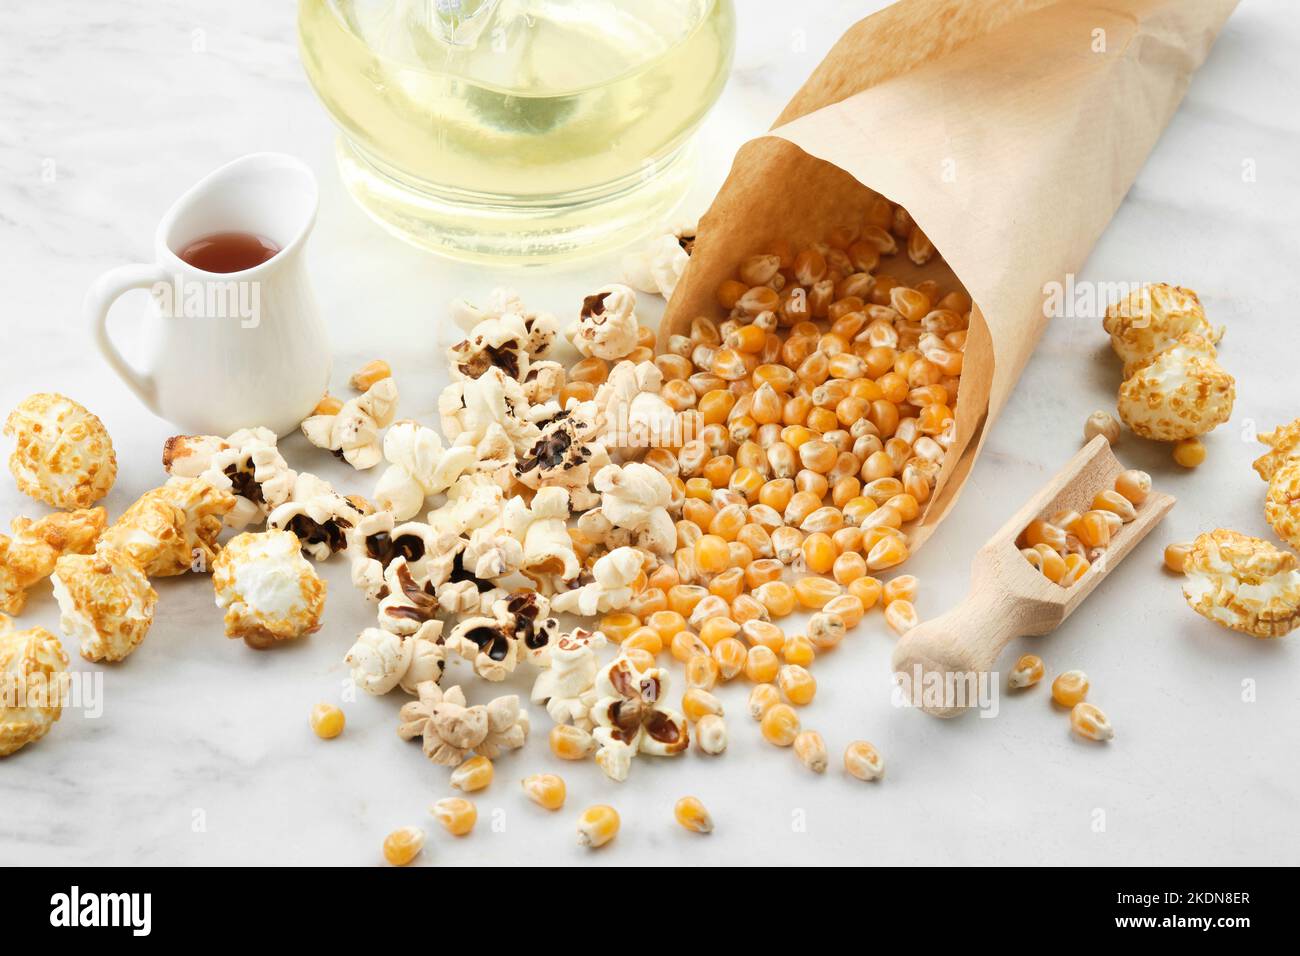 Pop-corn, grains de maïs séchés, sauce caramel et bouteille d'huile sur la table de cuisine. Banque D'Images